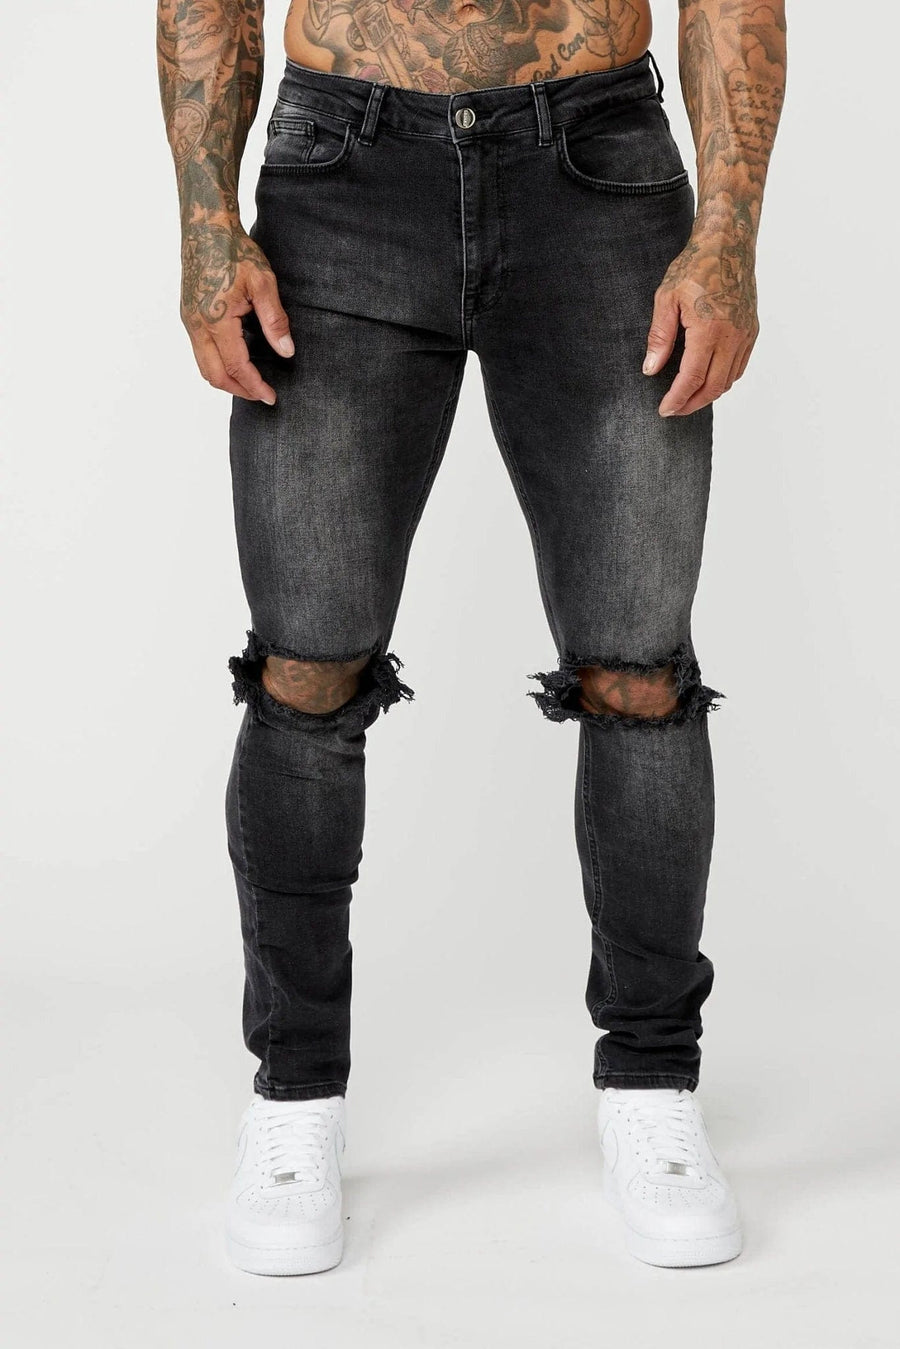 Legend London Jeans SLIM FIT JEANS - GREY WASH DESTROYED KNEE